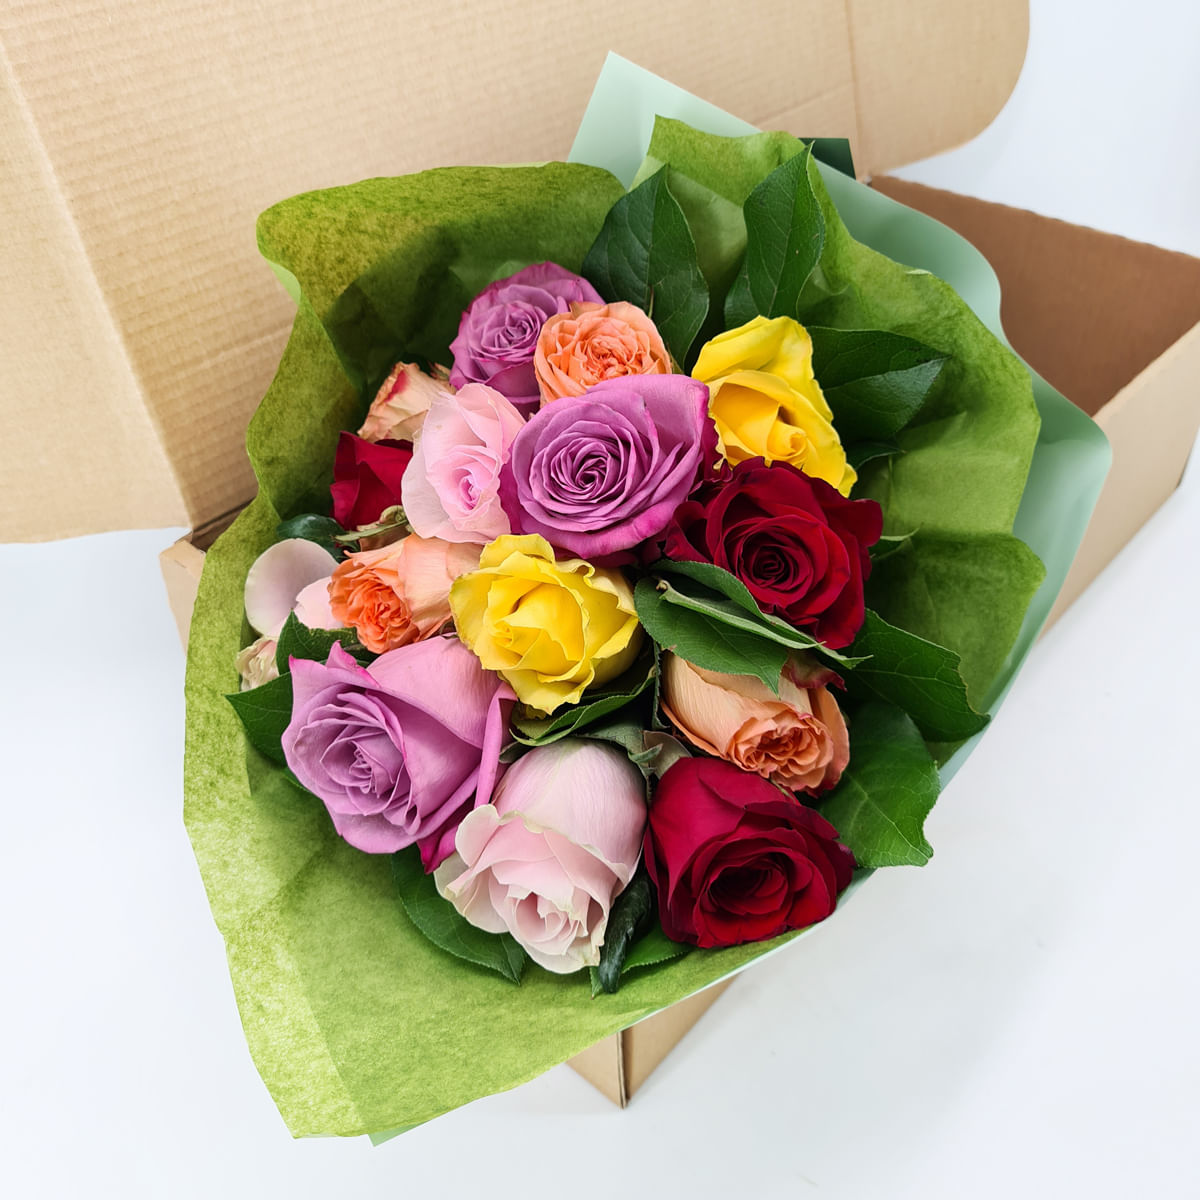 Buchet de 15 trandafiri multicolori in cutie Buchet imagine 2022